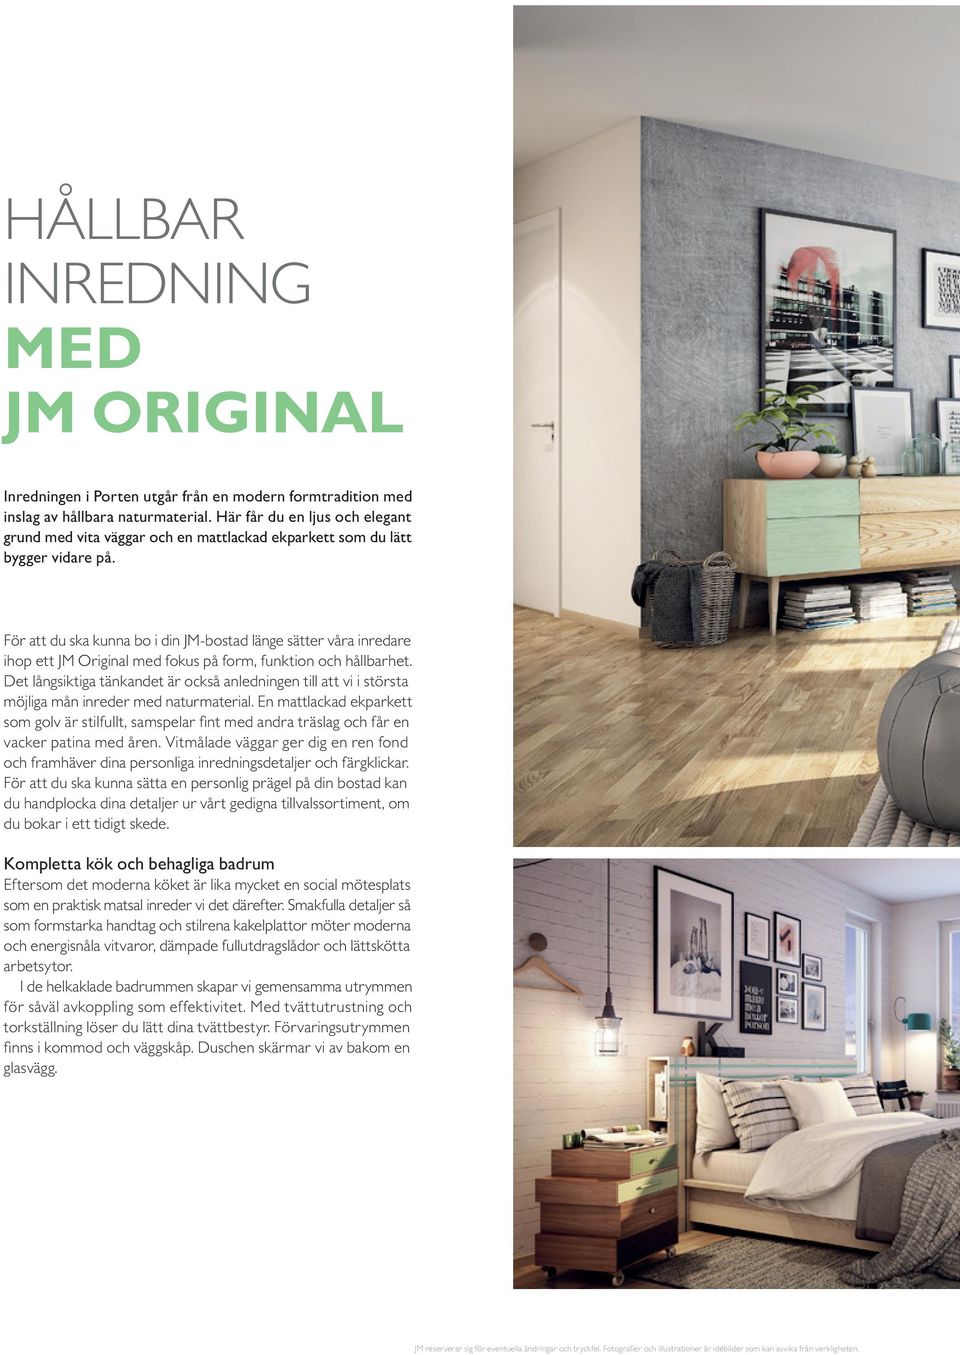 För att du ska kunna bo i din JM-bostad länge sätter våra inredare ihop ett JM Original med fokus på form, funktion och hållbarhet.